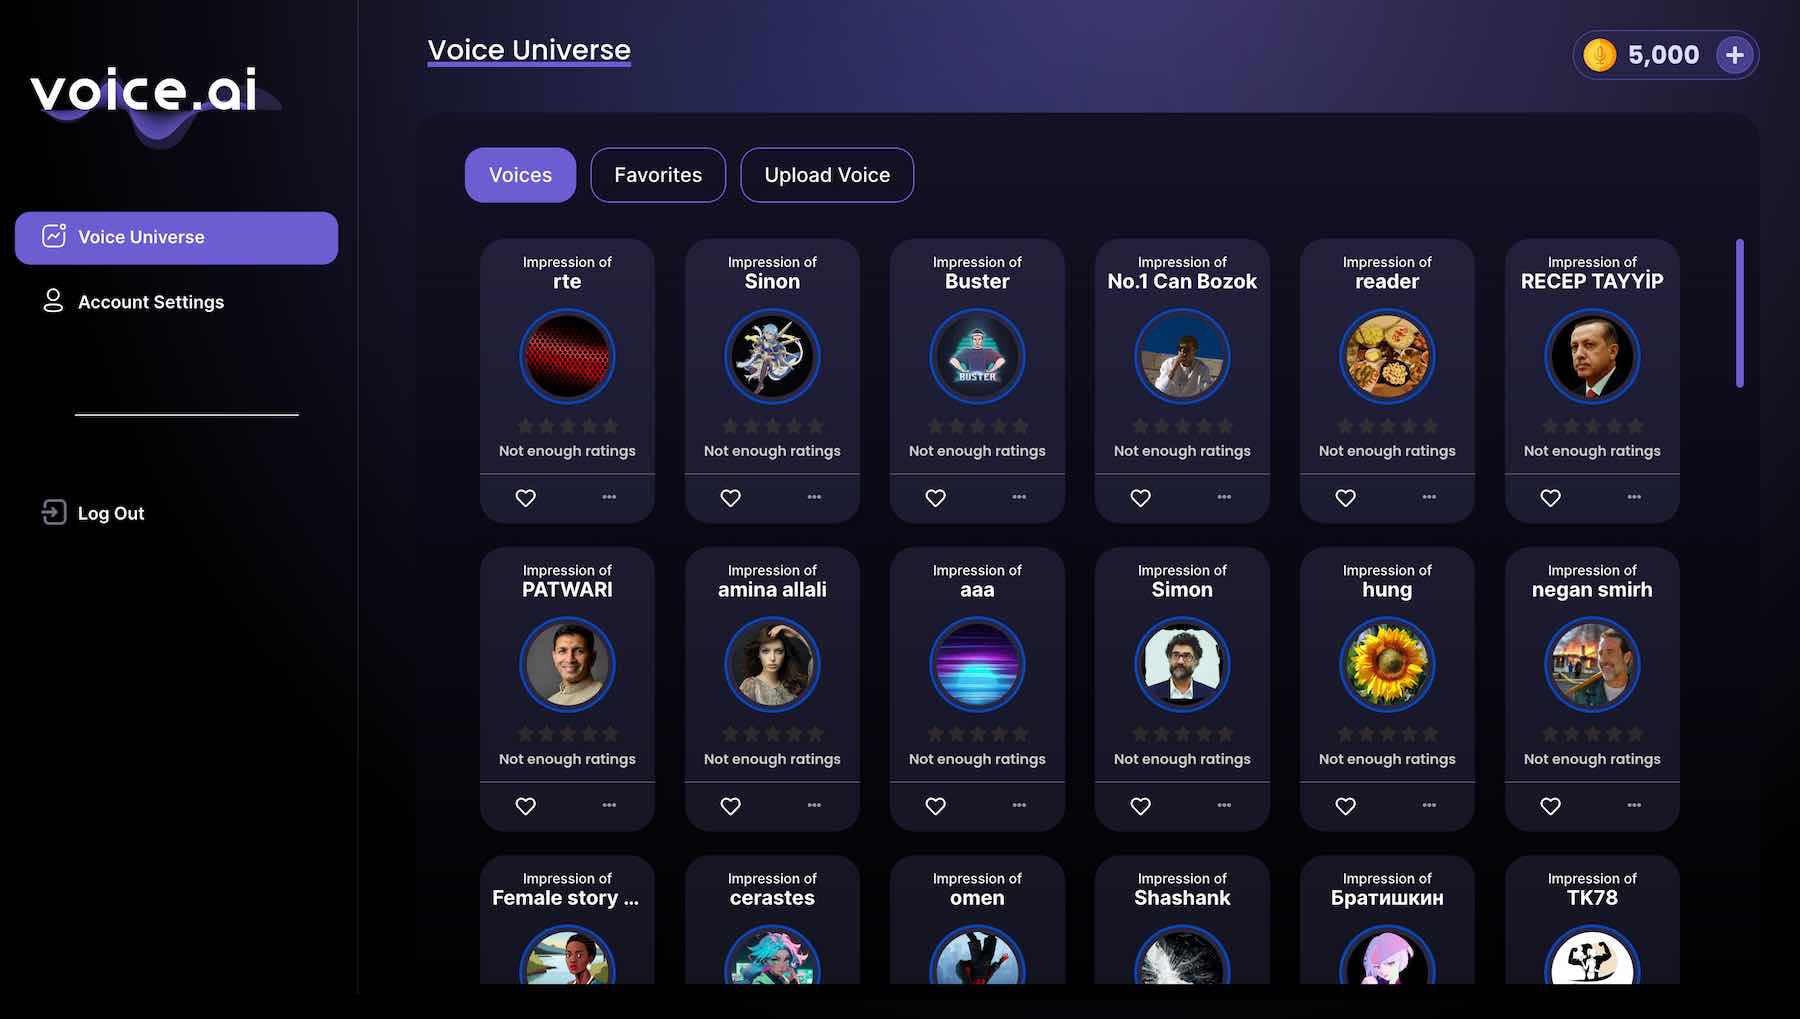 Zrzut ekranu funkcji wszechświata głosowego Voice.ai